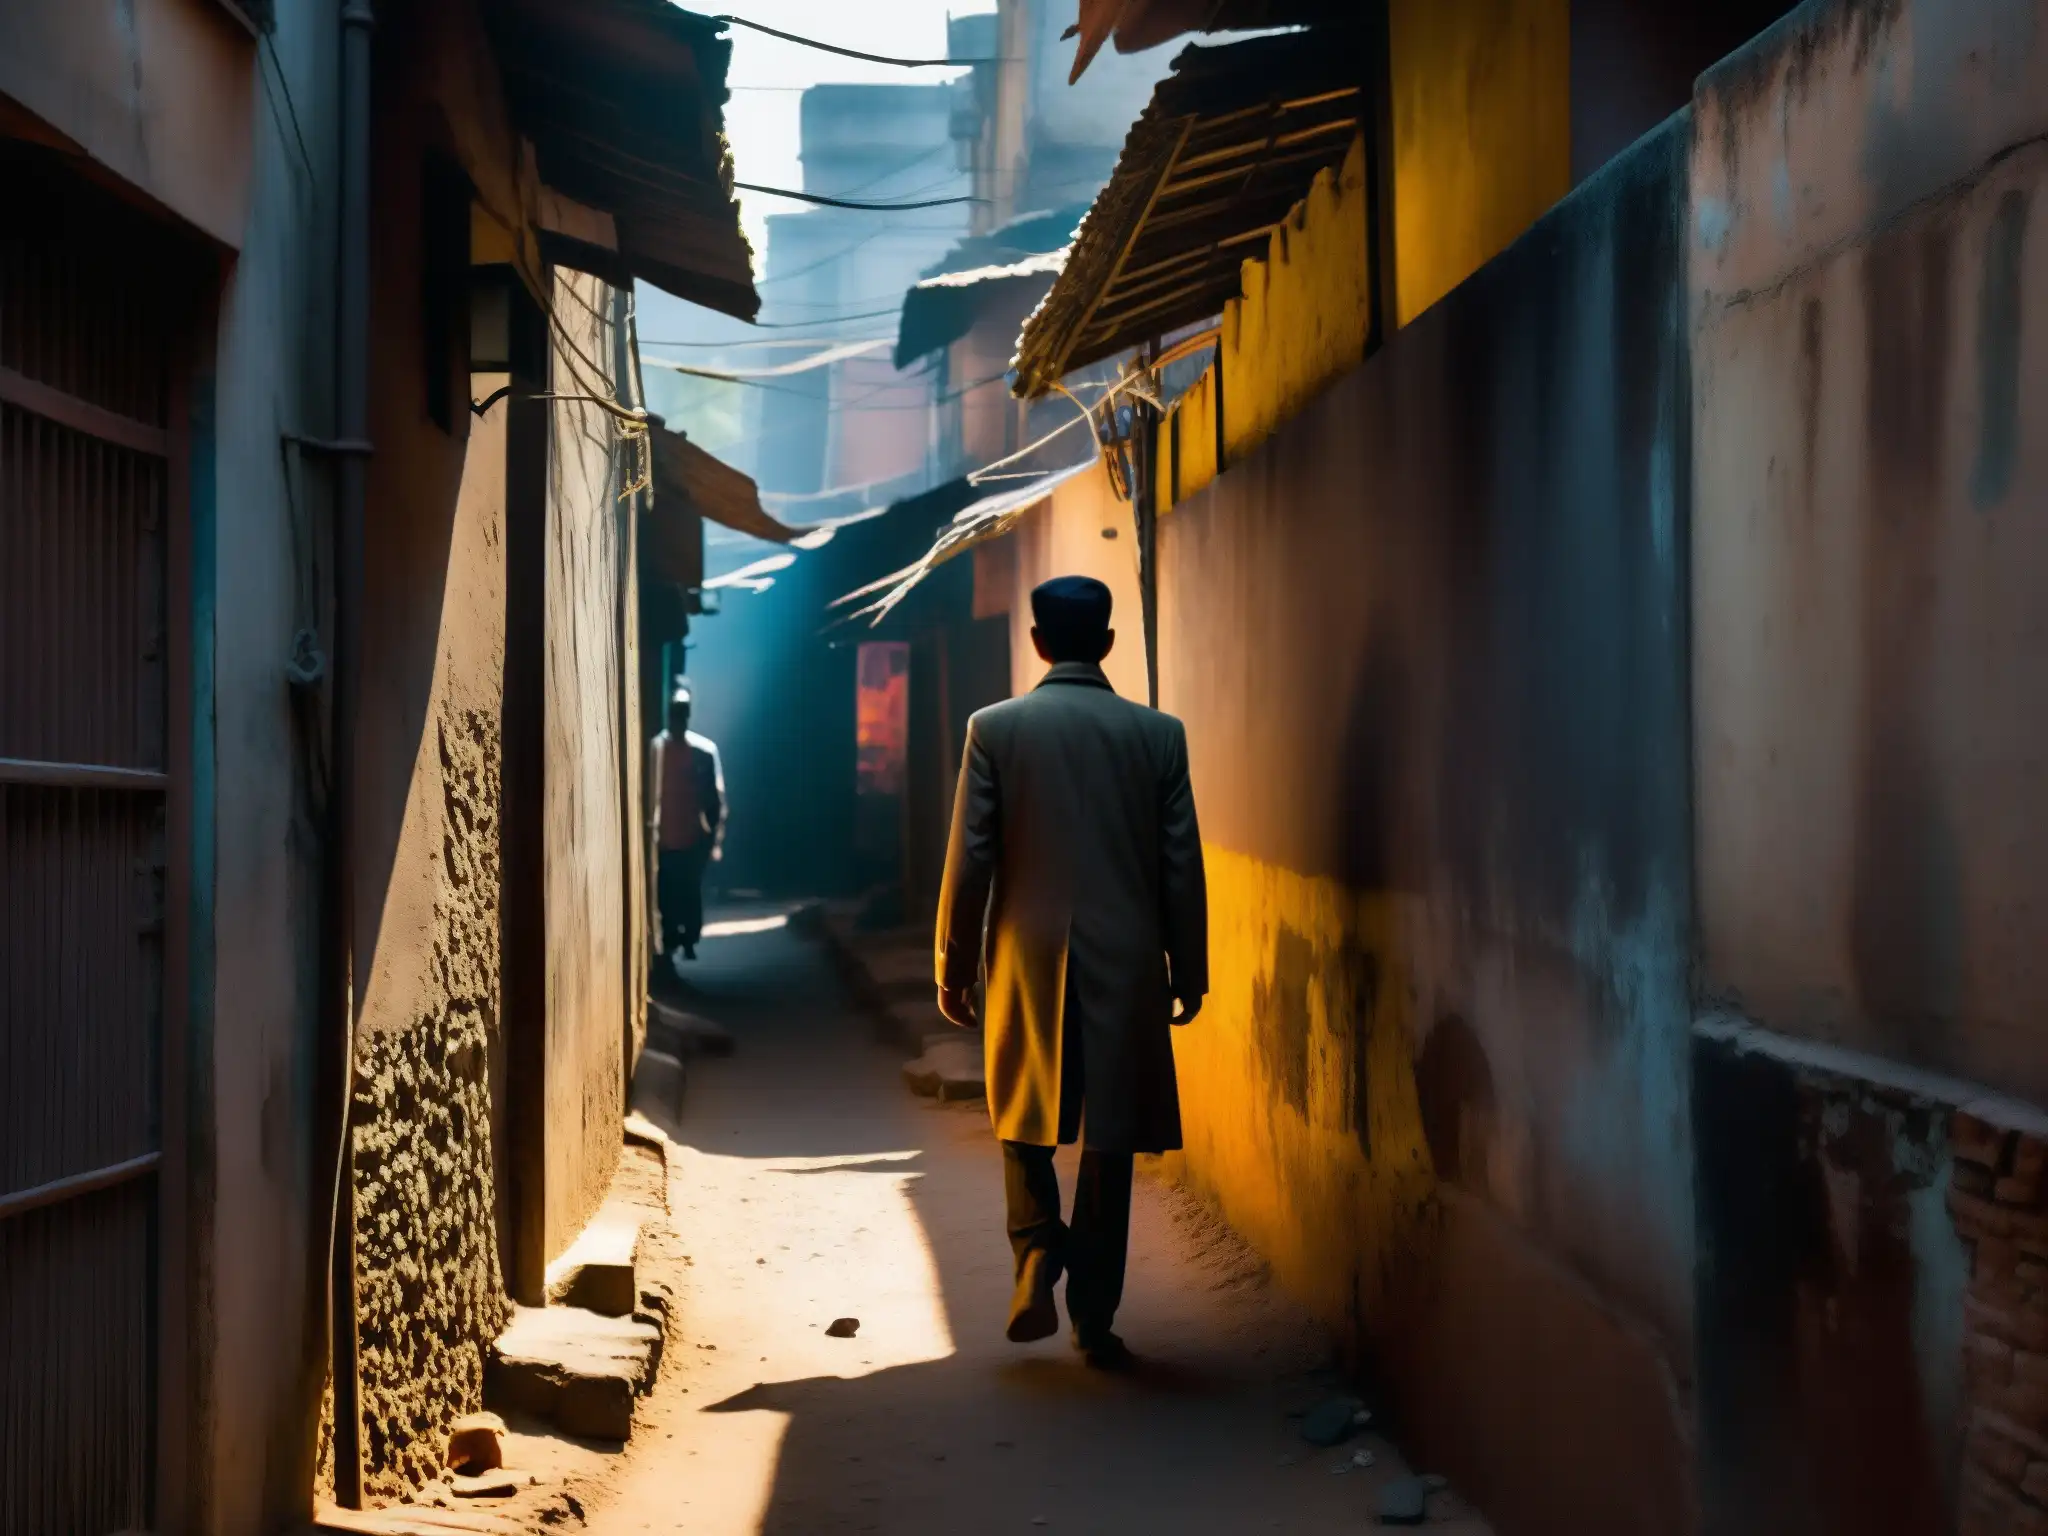 El misterio de la Criatura de la Noche de Delhi cobra vida en el oscuro callejón de la India, donde las sombras acechan